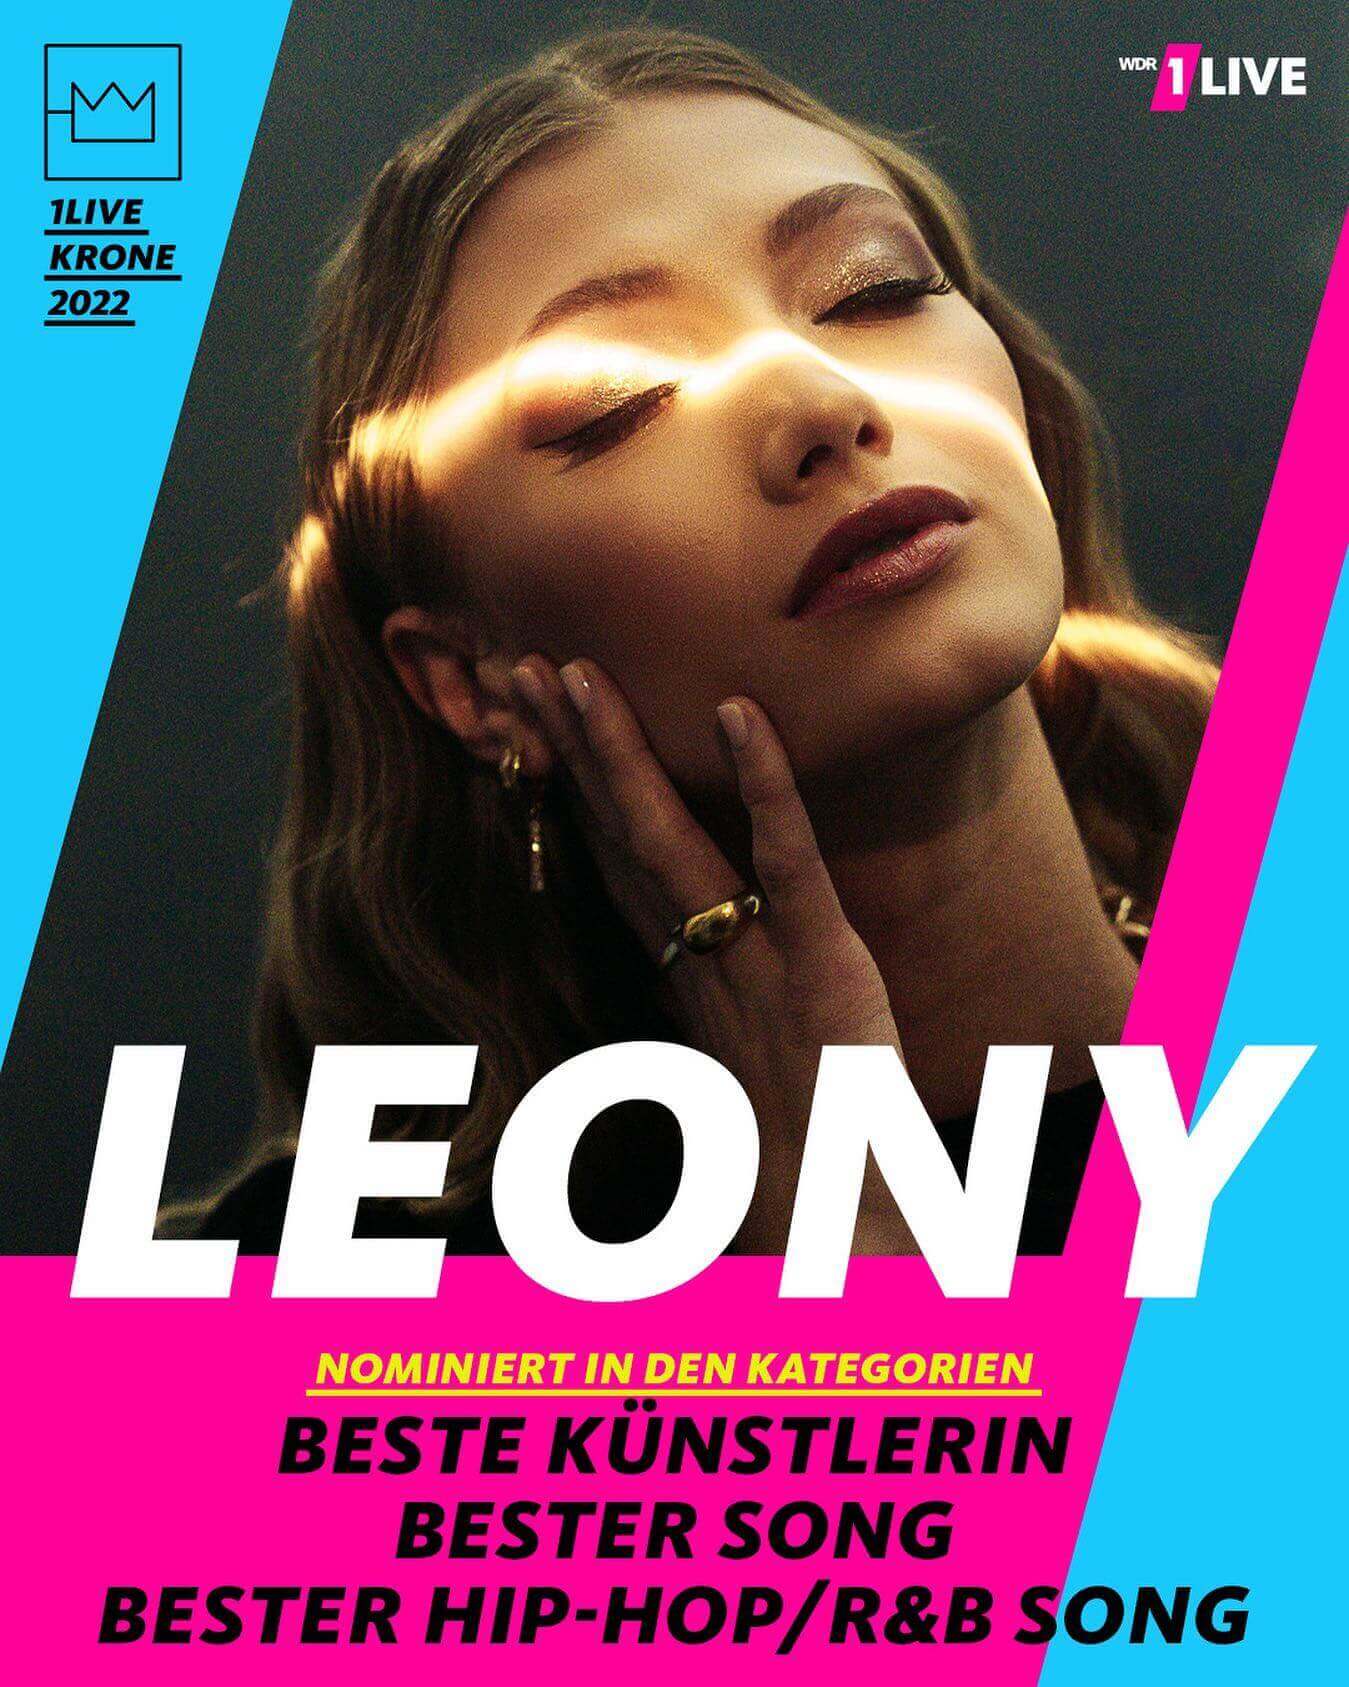 @leony.music ist in drei Kategorien für die diesjährige @1live Krone nominiert! 🥳 Votet jetzt für sie als 'Beste Künstlerin', 'Bester Song' und 'Bester Hip-Hop / R&B Song' ️
.
.
.